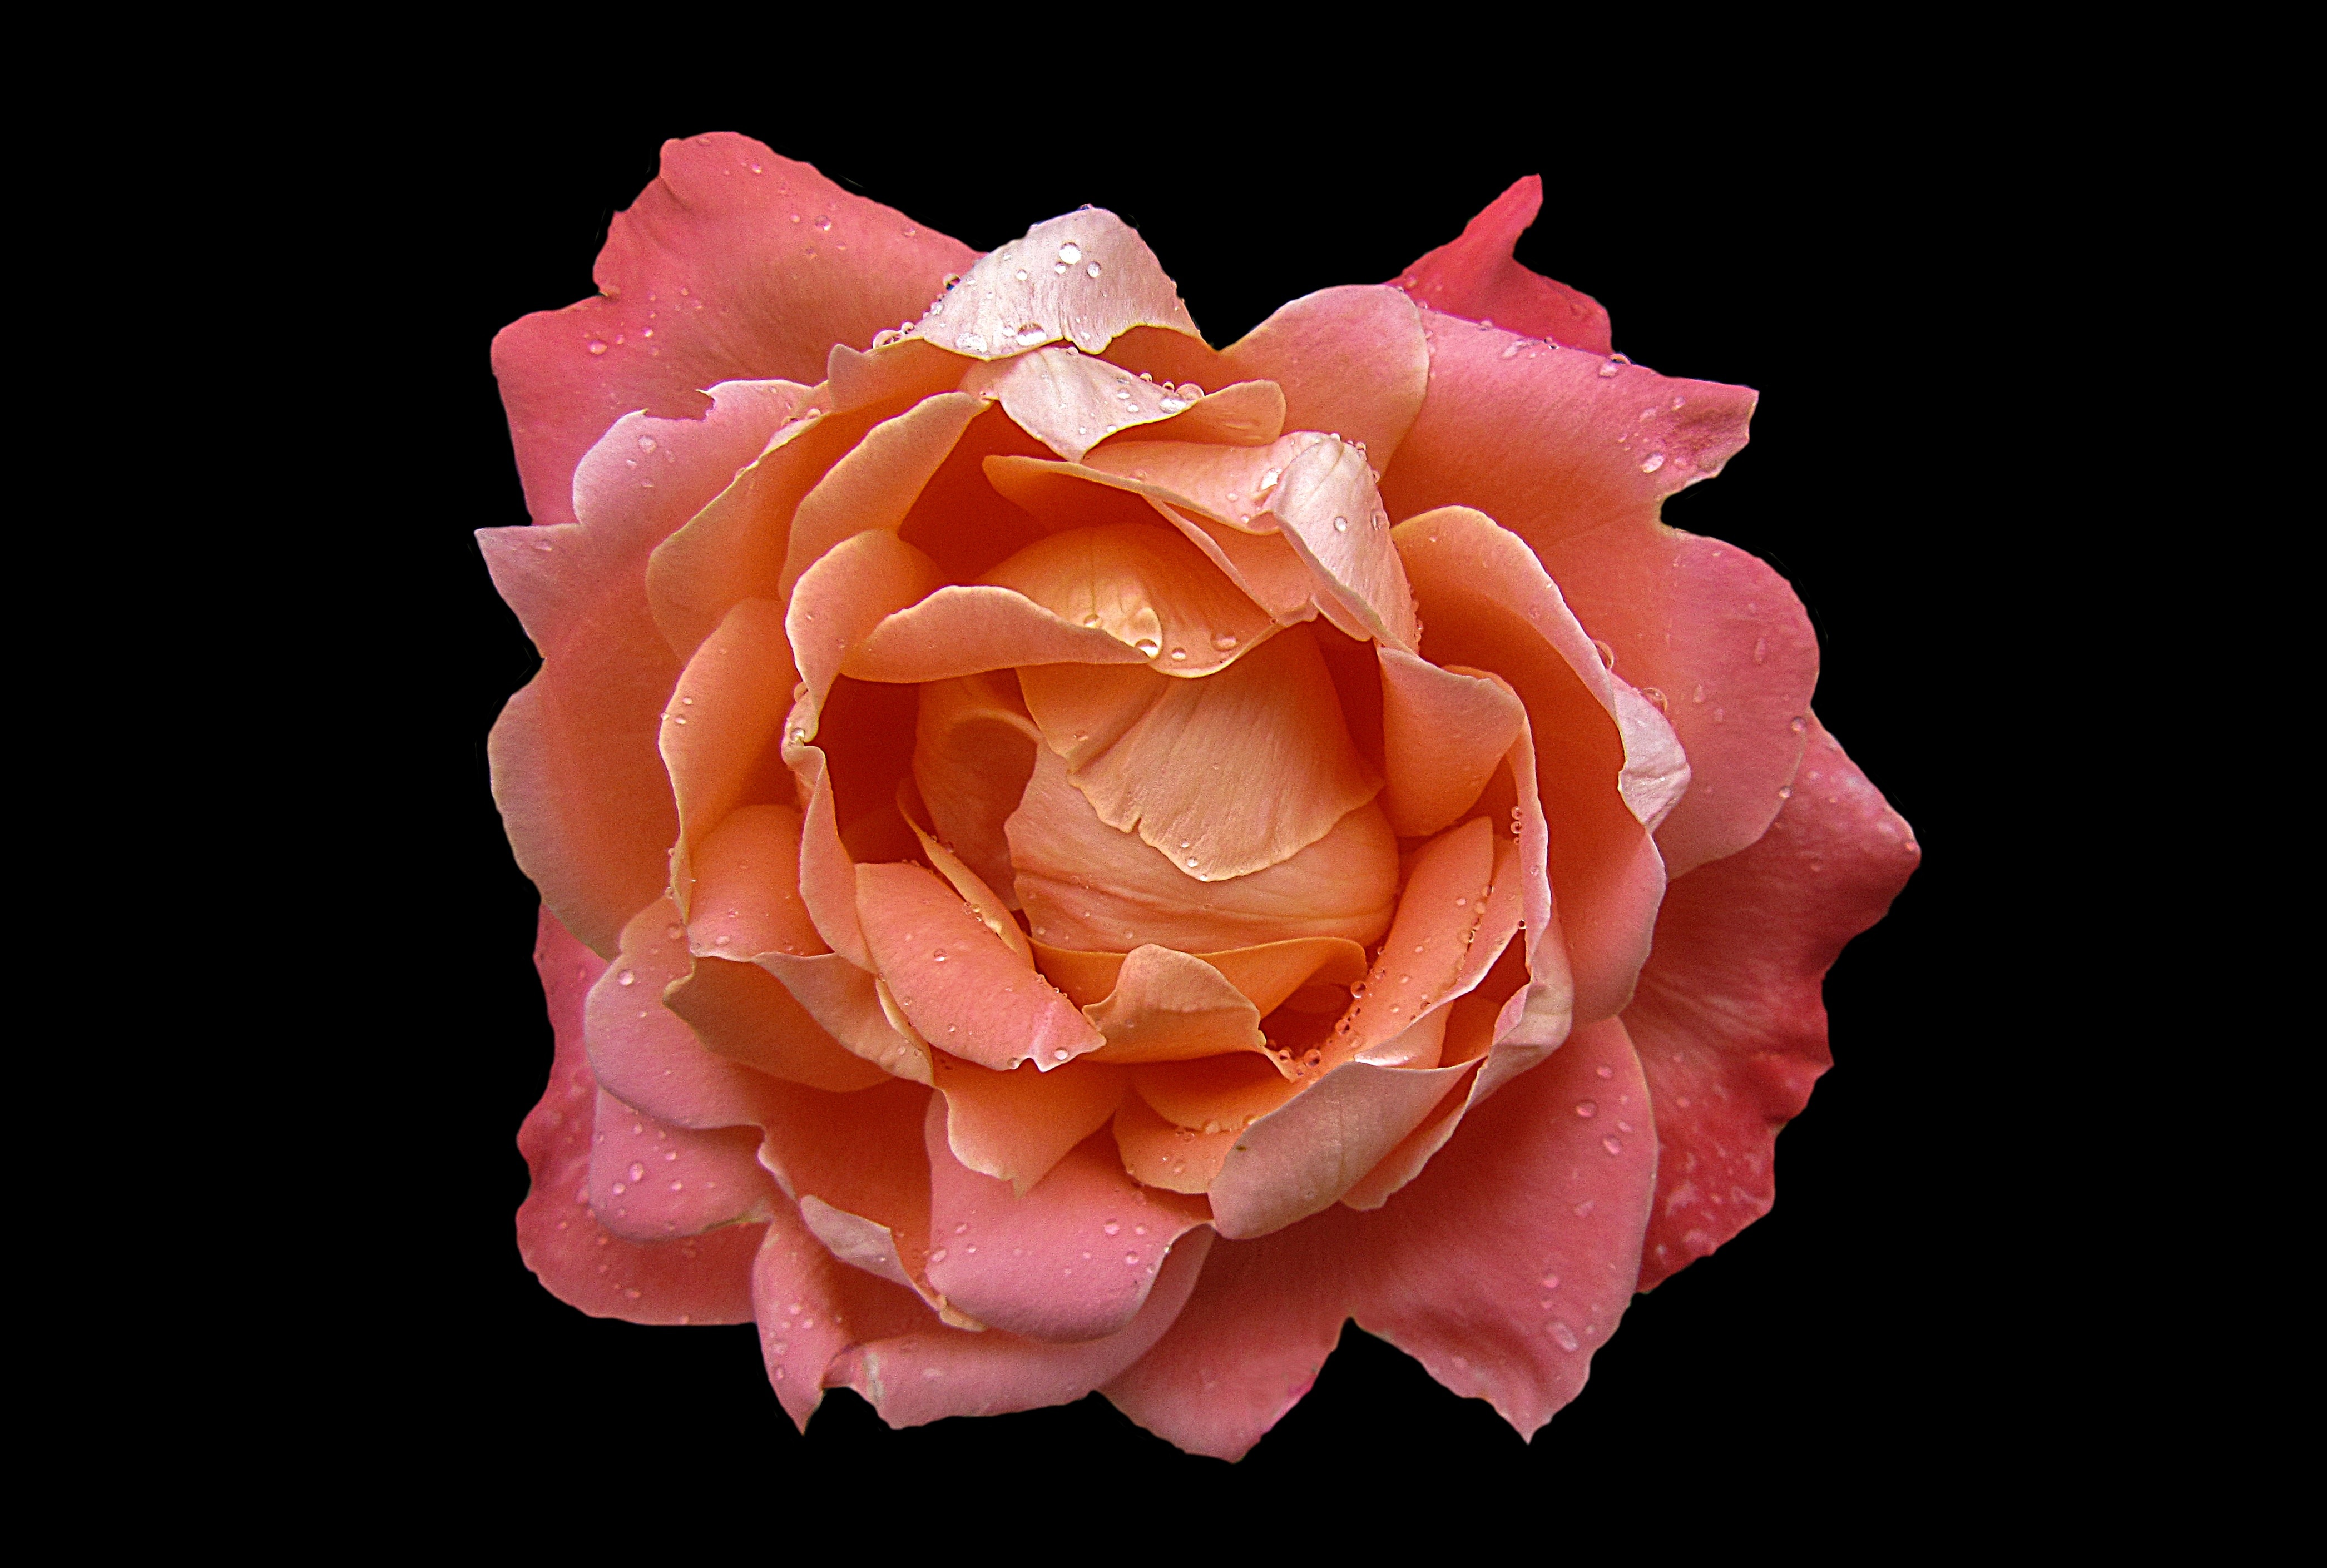 3840x2160 wallpaper | Rosengarten Bad Kissingen, rose - flower, flower ...